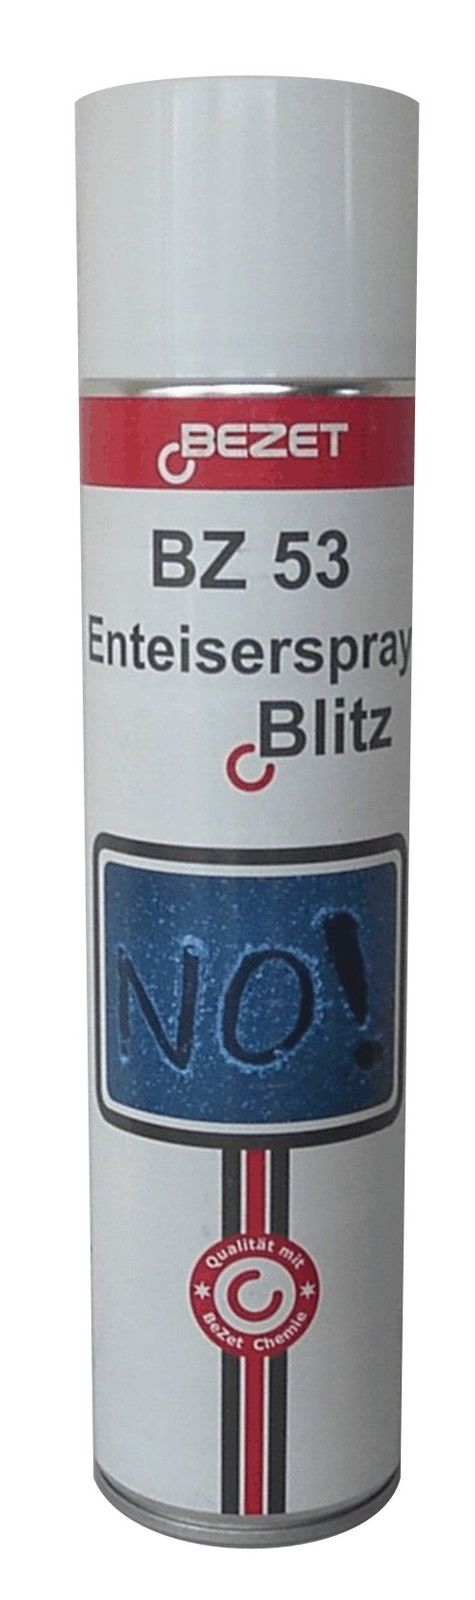 Adapterland - Blitz-Enteiserspray - super günstig - KFZ-Eisfrei